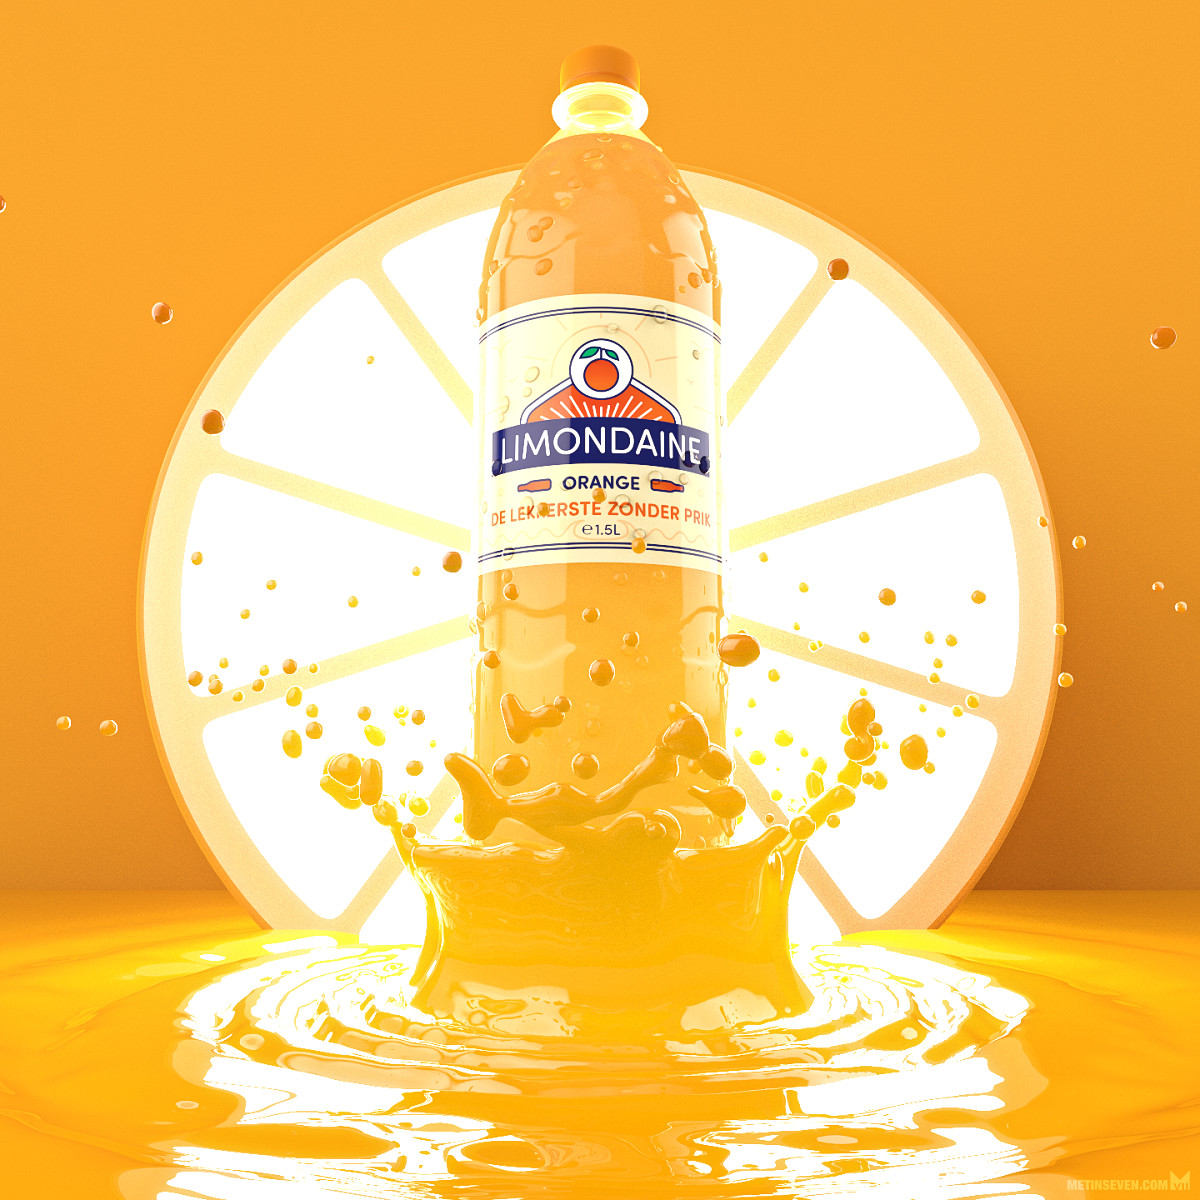 Limondaine lemonade bottle packshot by Metin Seven 1200 px.jpg